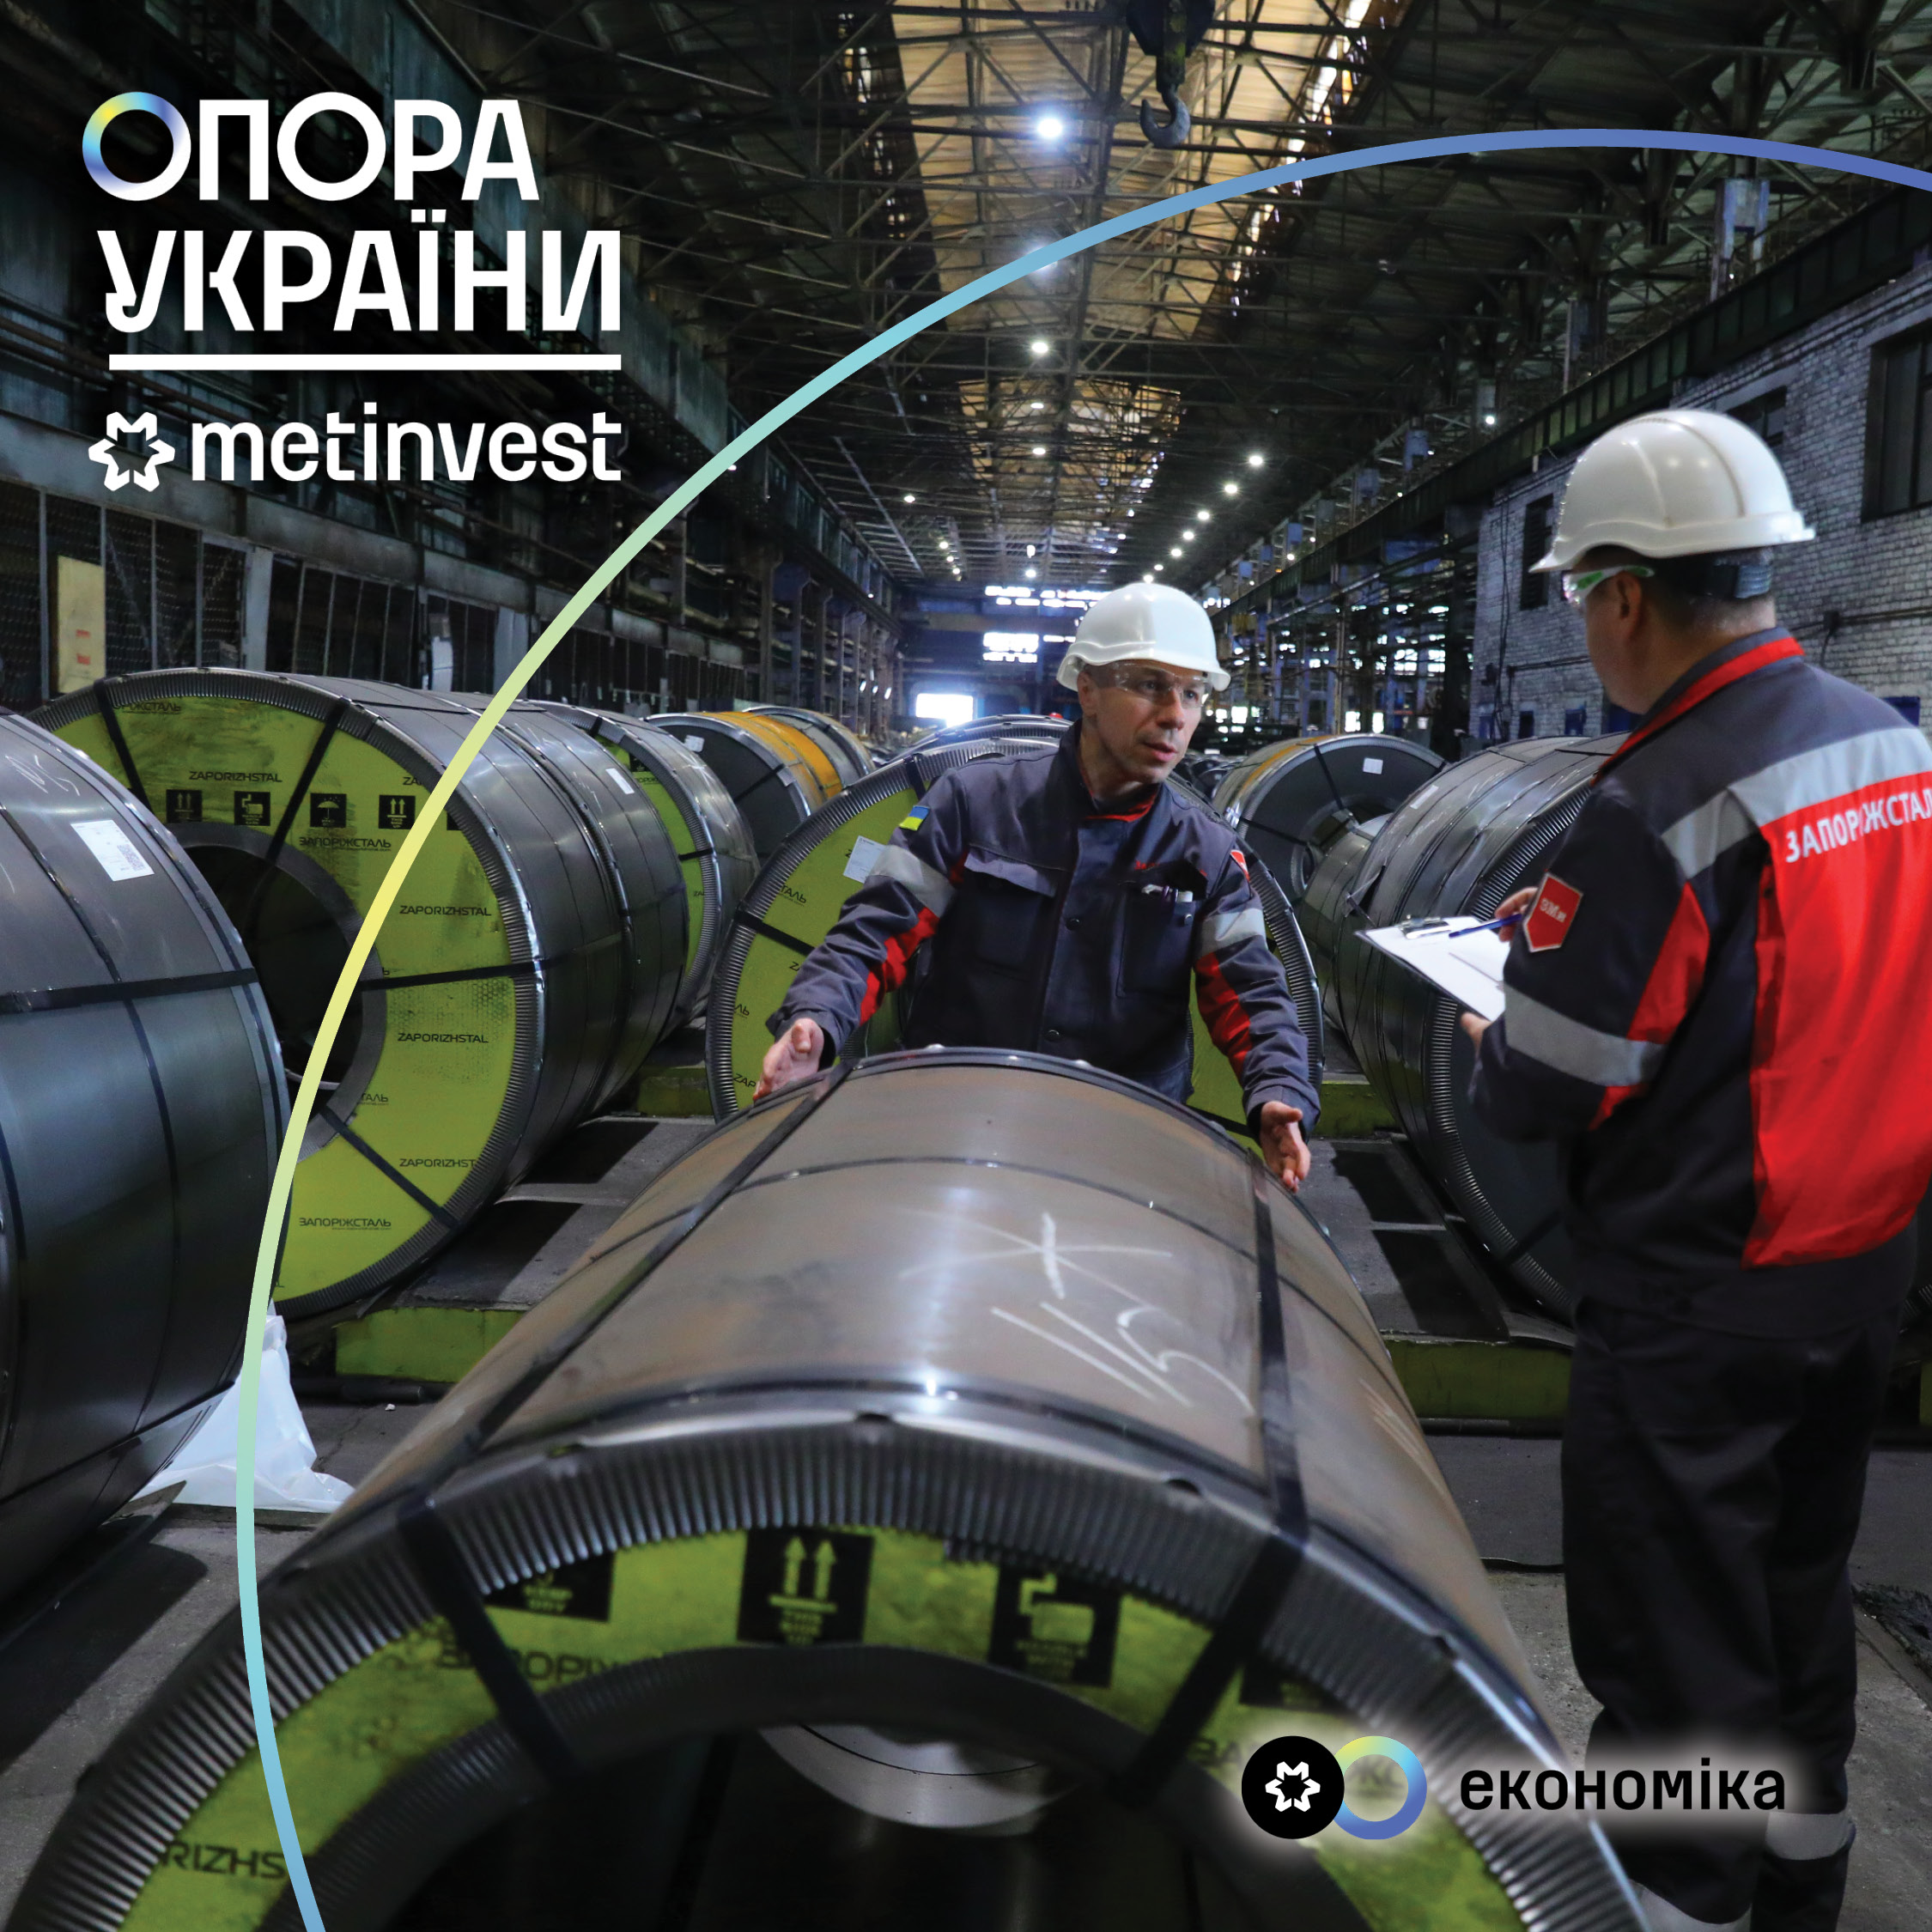 Опора України: Метінвест спрямував на допомогу країні 2,1 млрд грн